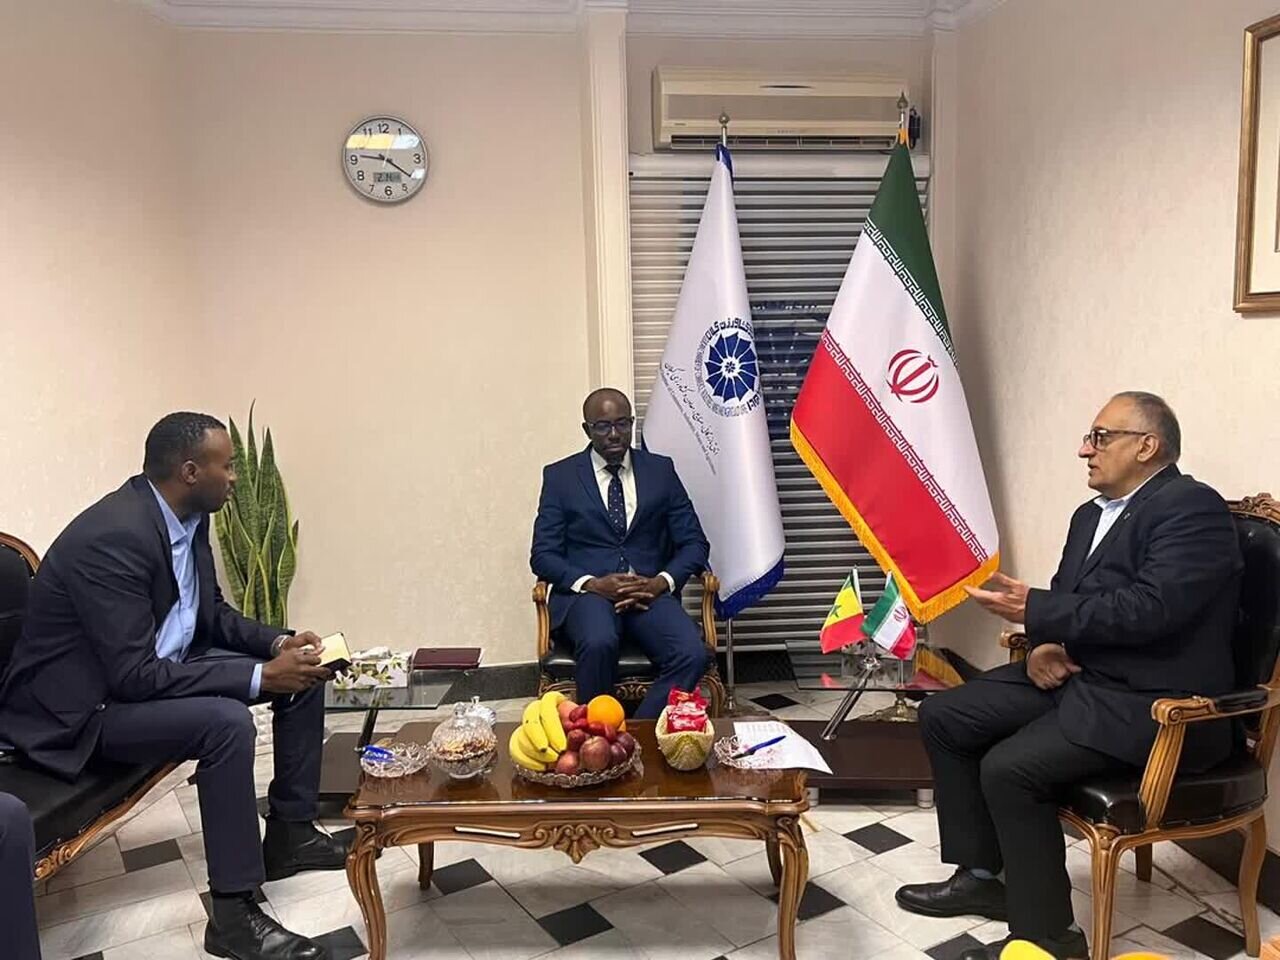 سنگال به دنبال روابط تجاری و اقتصادی با ایران است